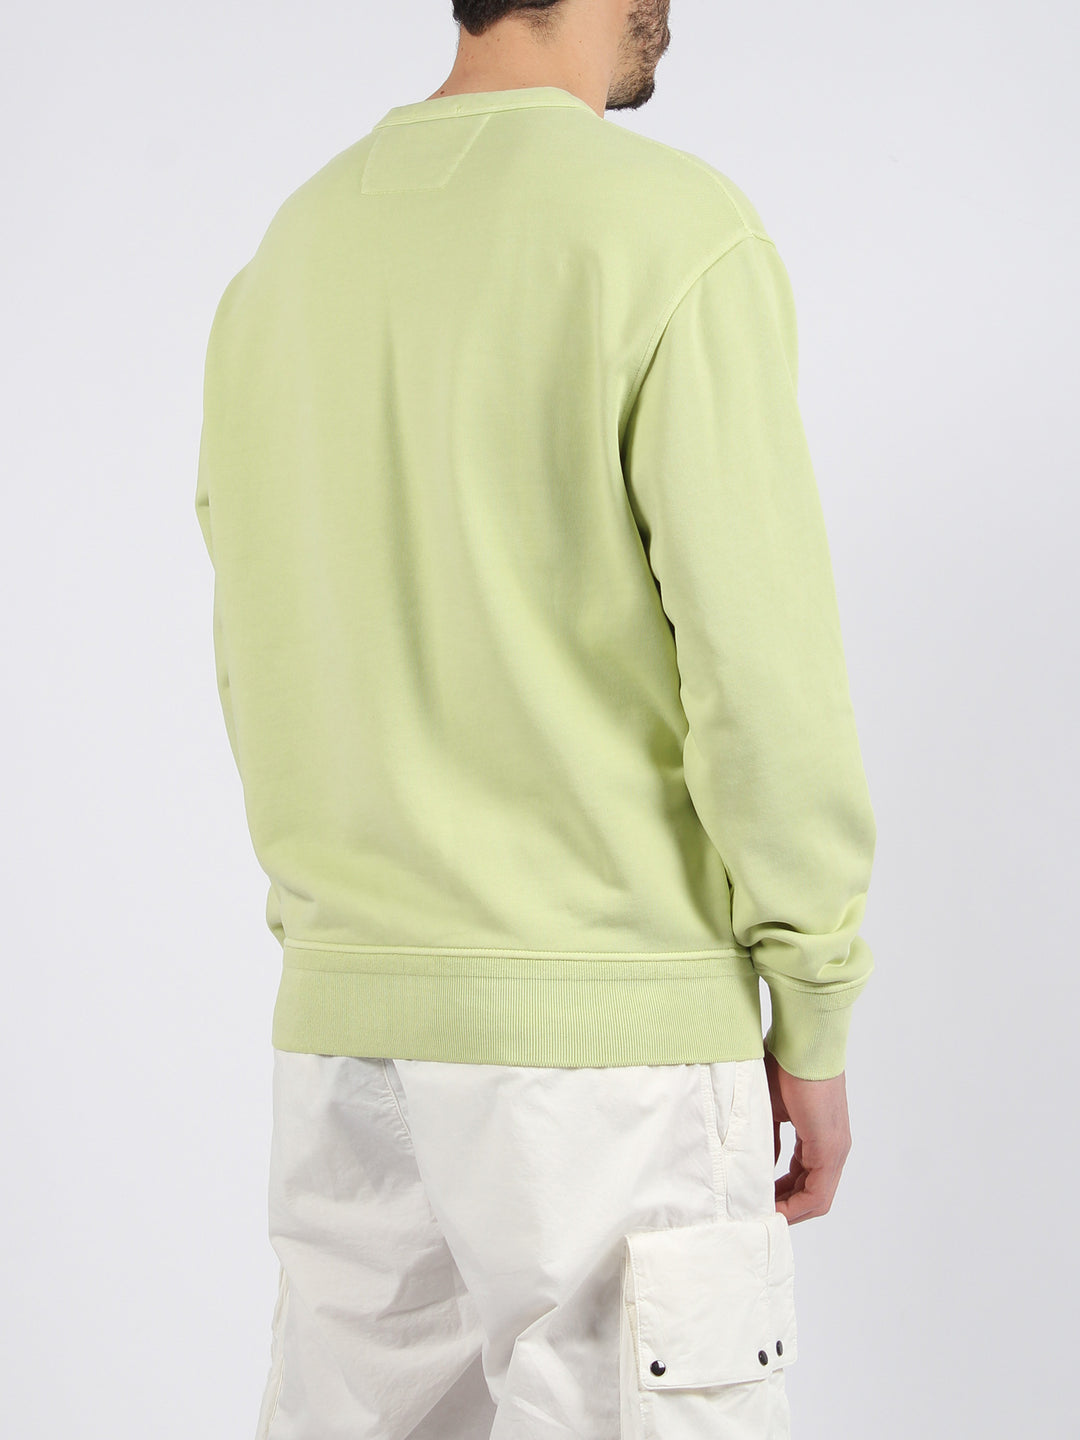 Light fleece sweatshirt